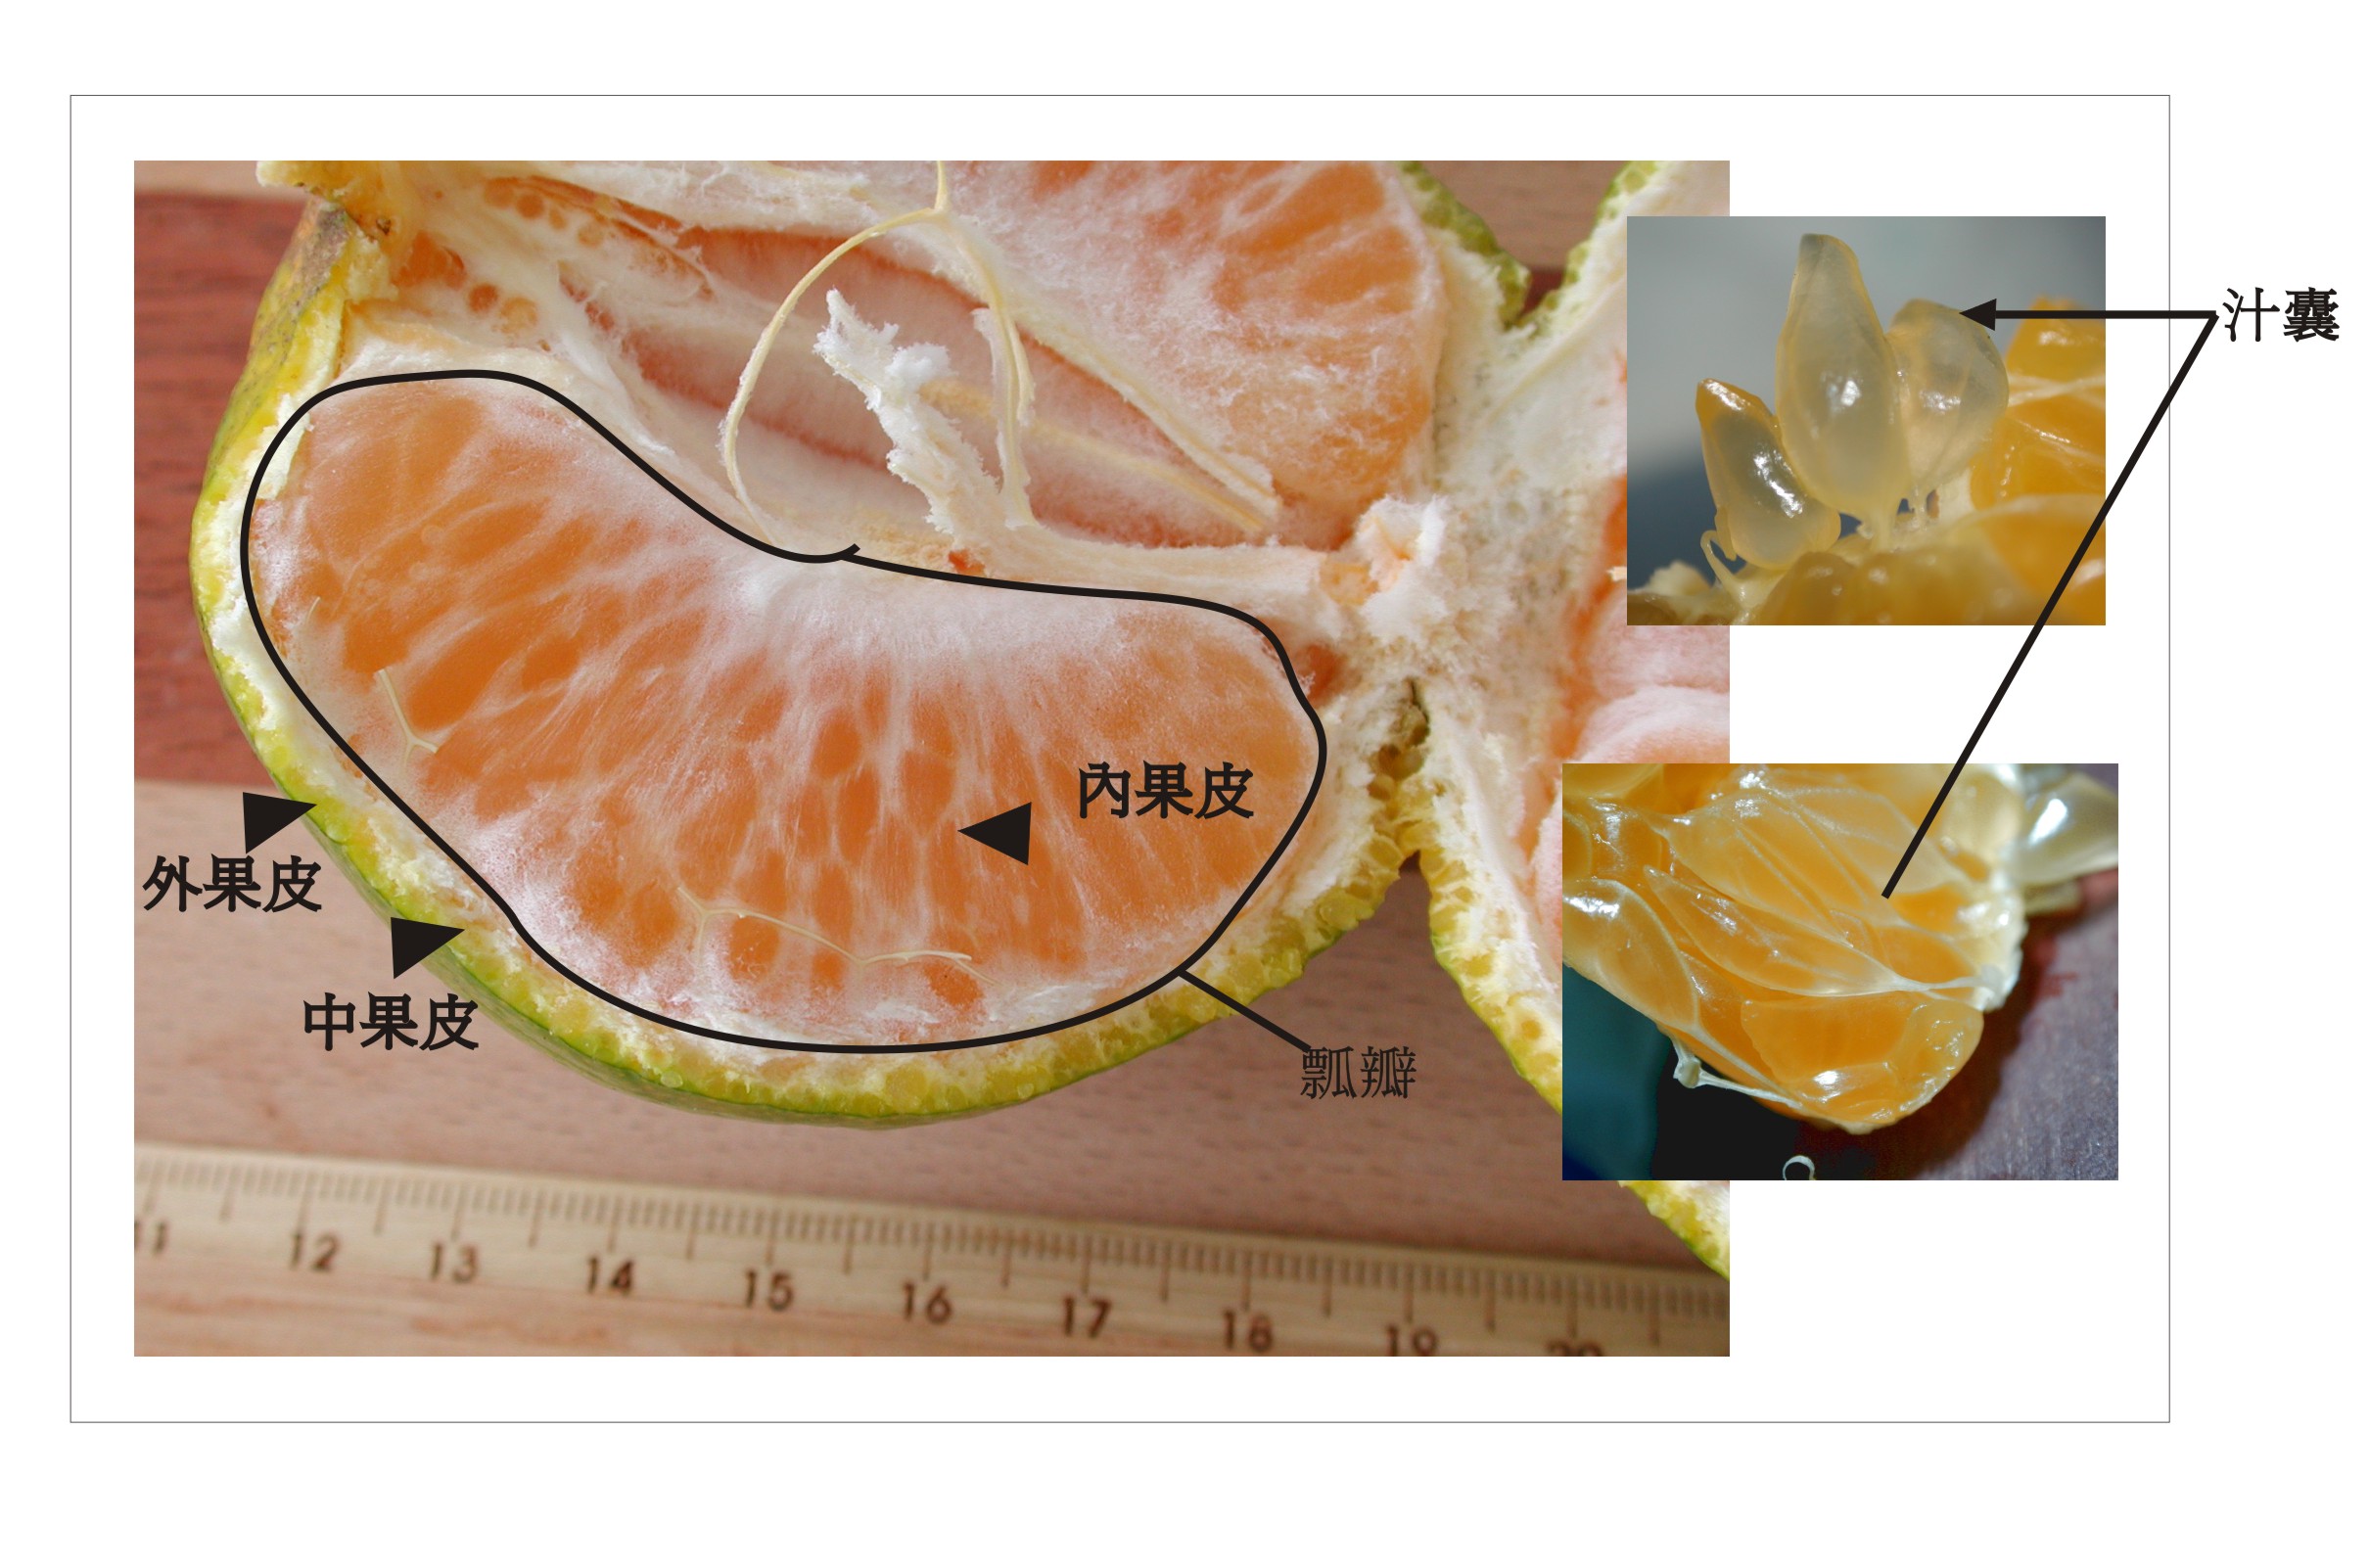 橘子结构解剖图图片